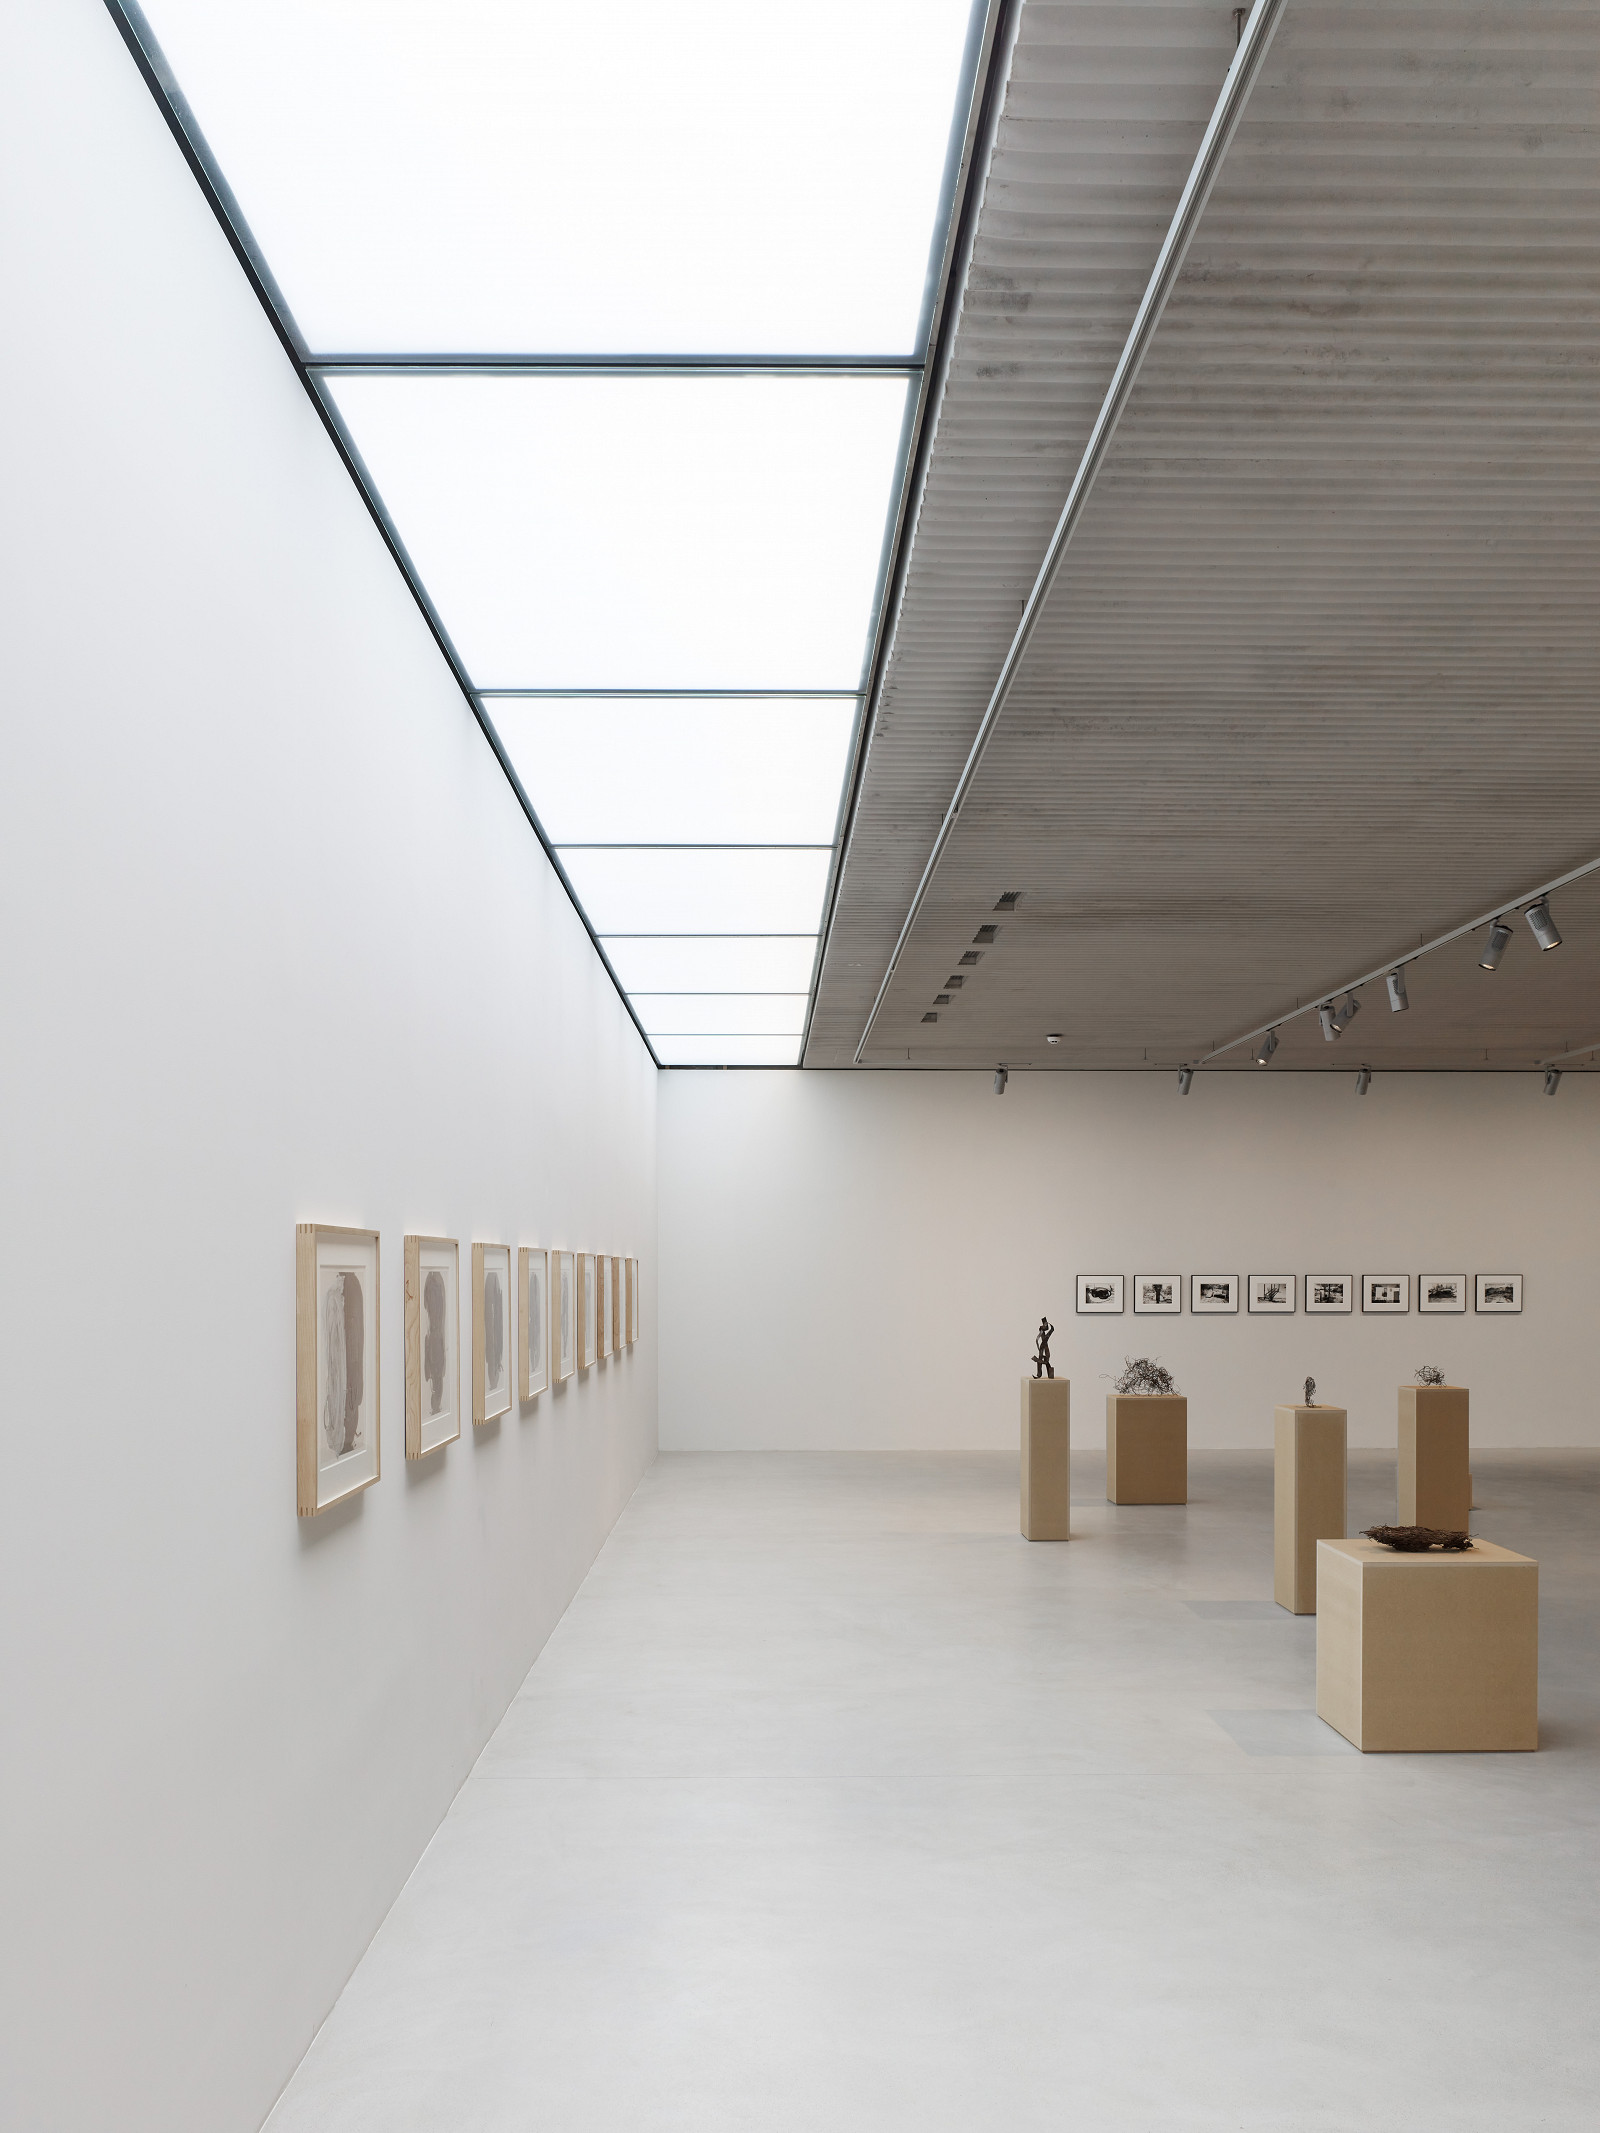 Gallery Xavier Hufkens, Brussels, Belgium – Robbrecht en Daem Architecten